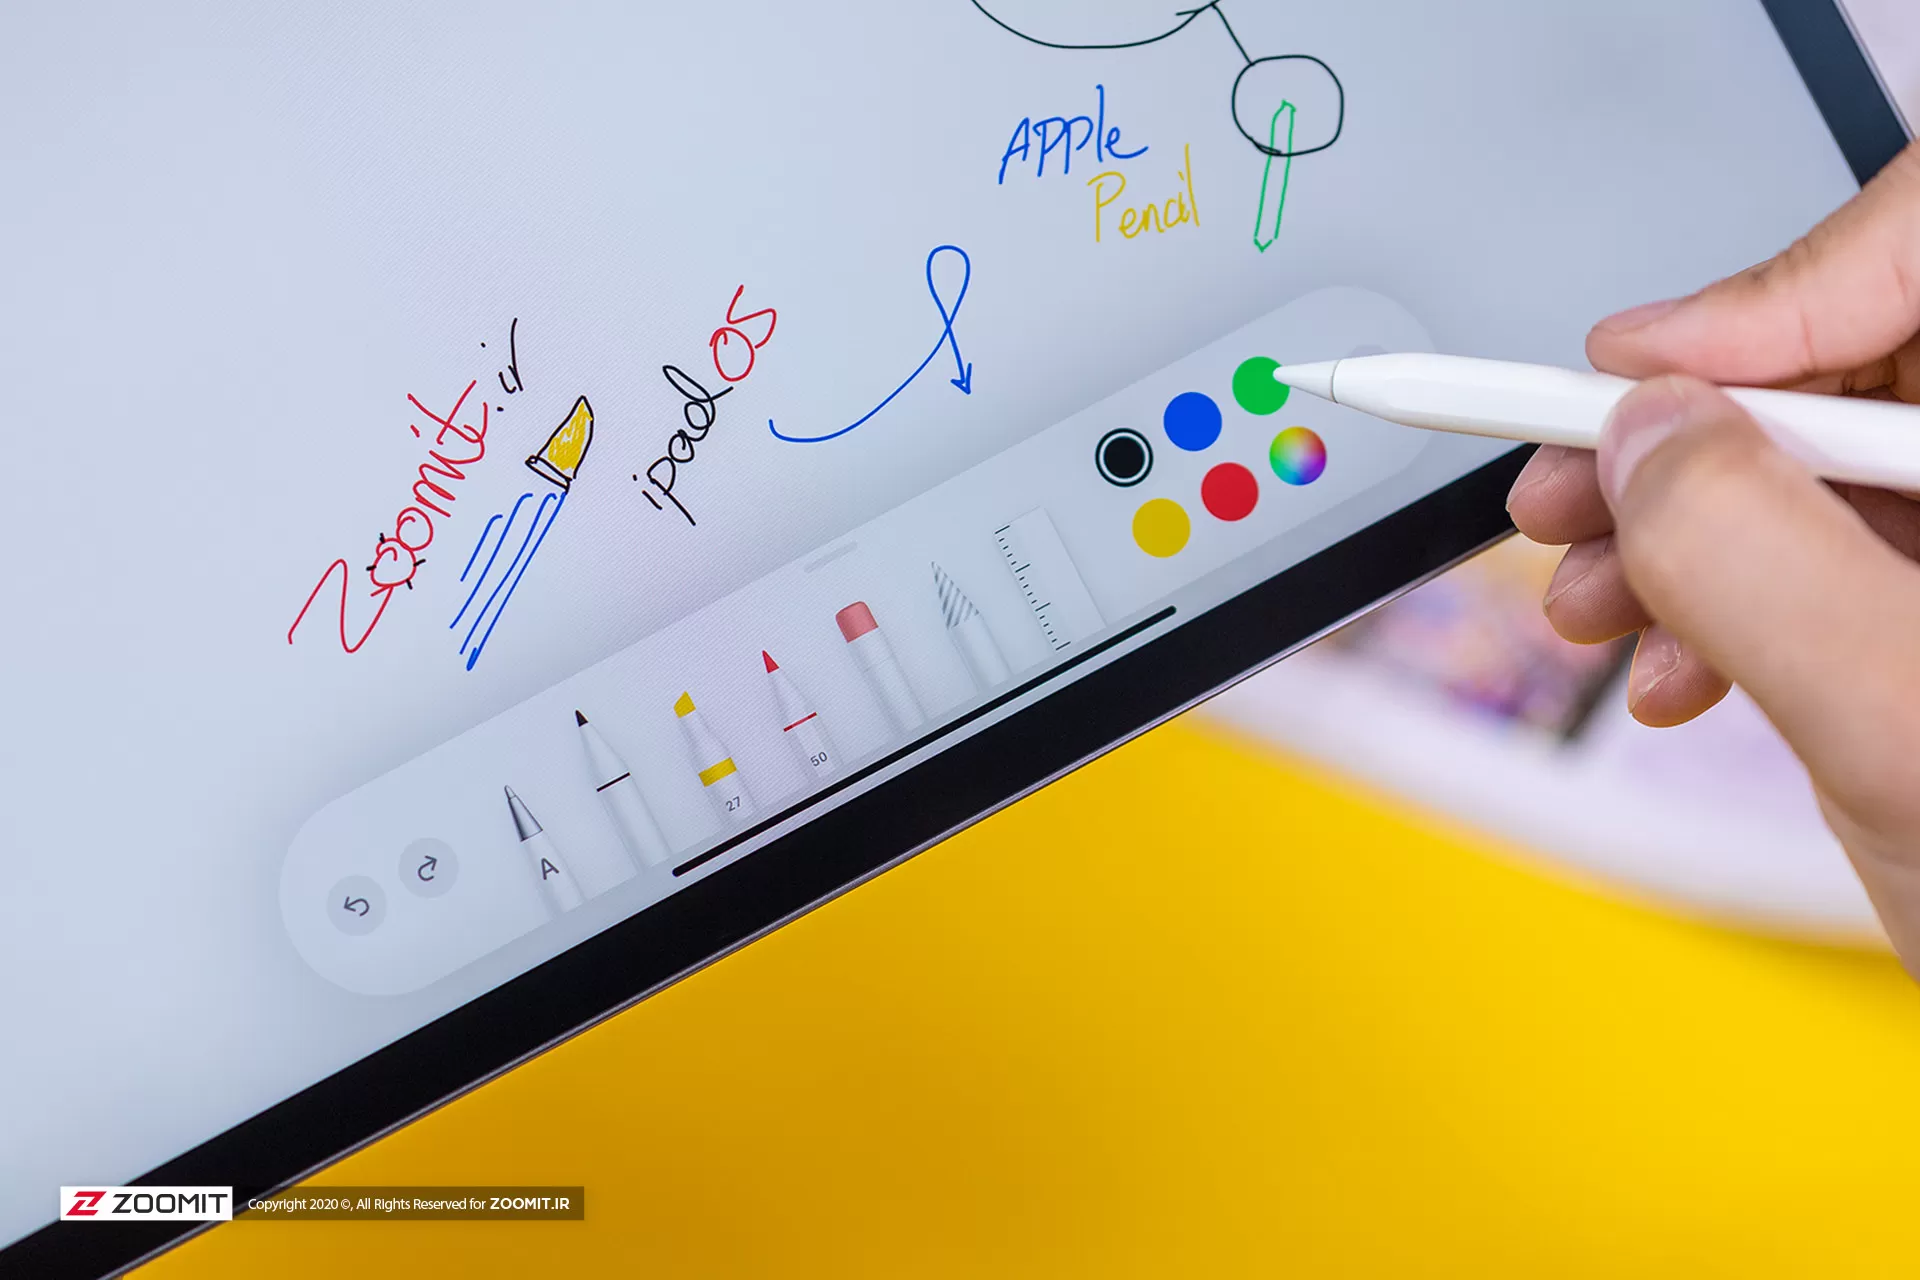 نسل بعدی اپل پنسل با قابلیت احتمالی تشخیص رنگ و بافت، ابزار رویایی طراحان گرافیک خواهد بود